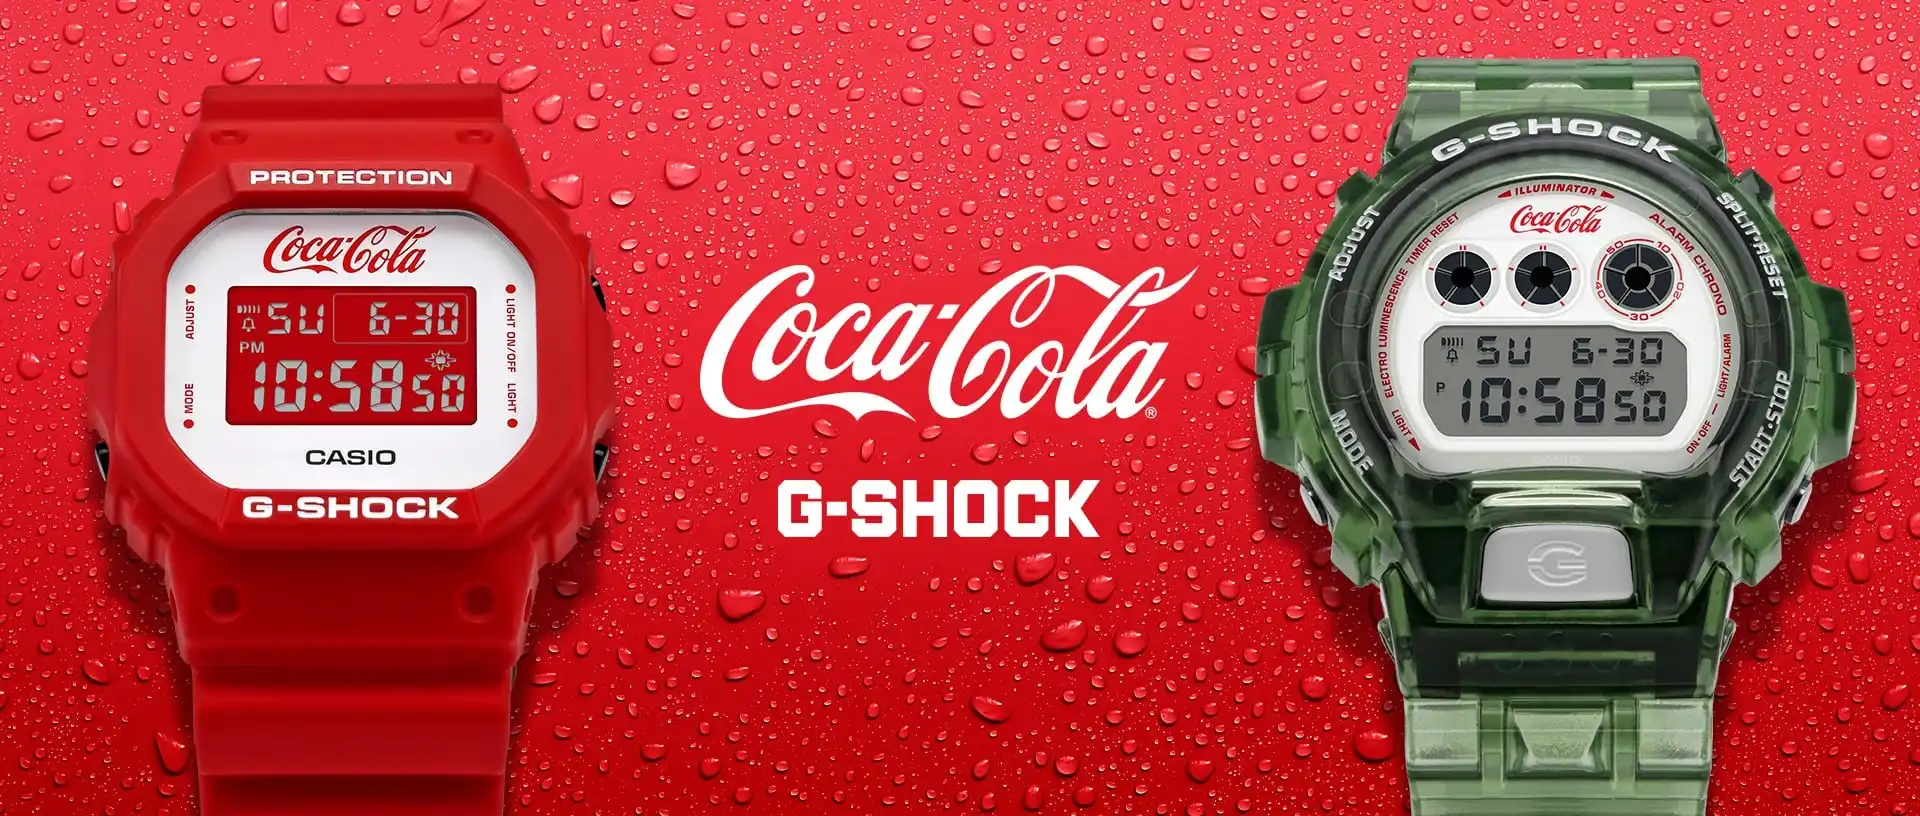 ¿Cómo son los relojes de G-Shock y Coca-Cola?